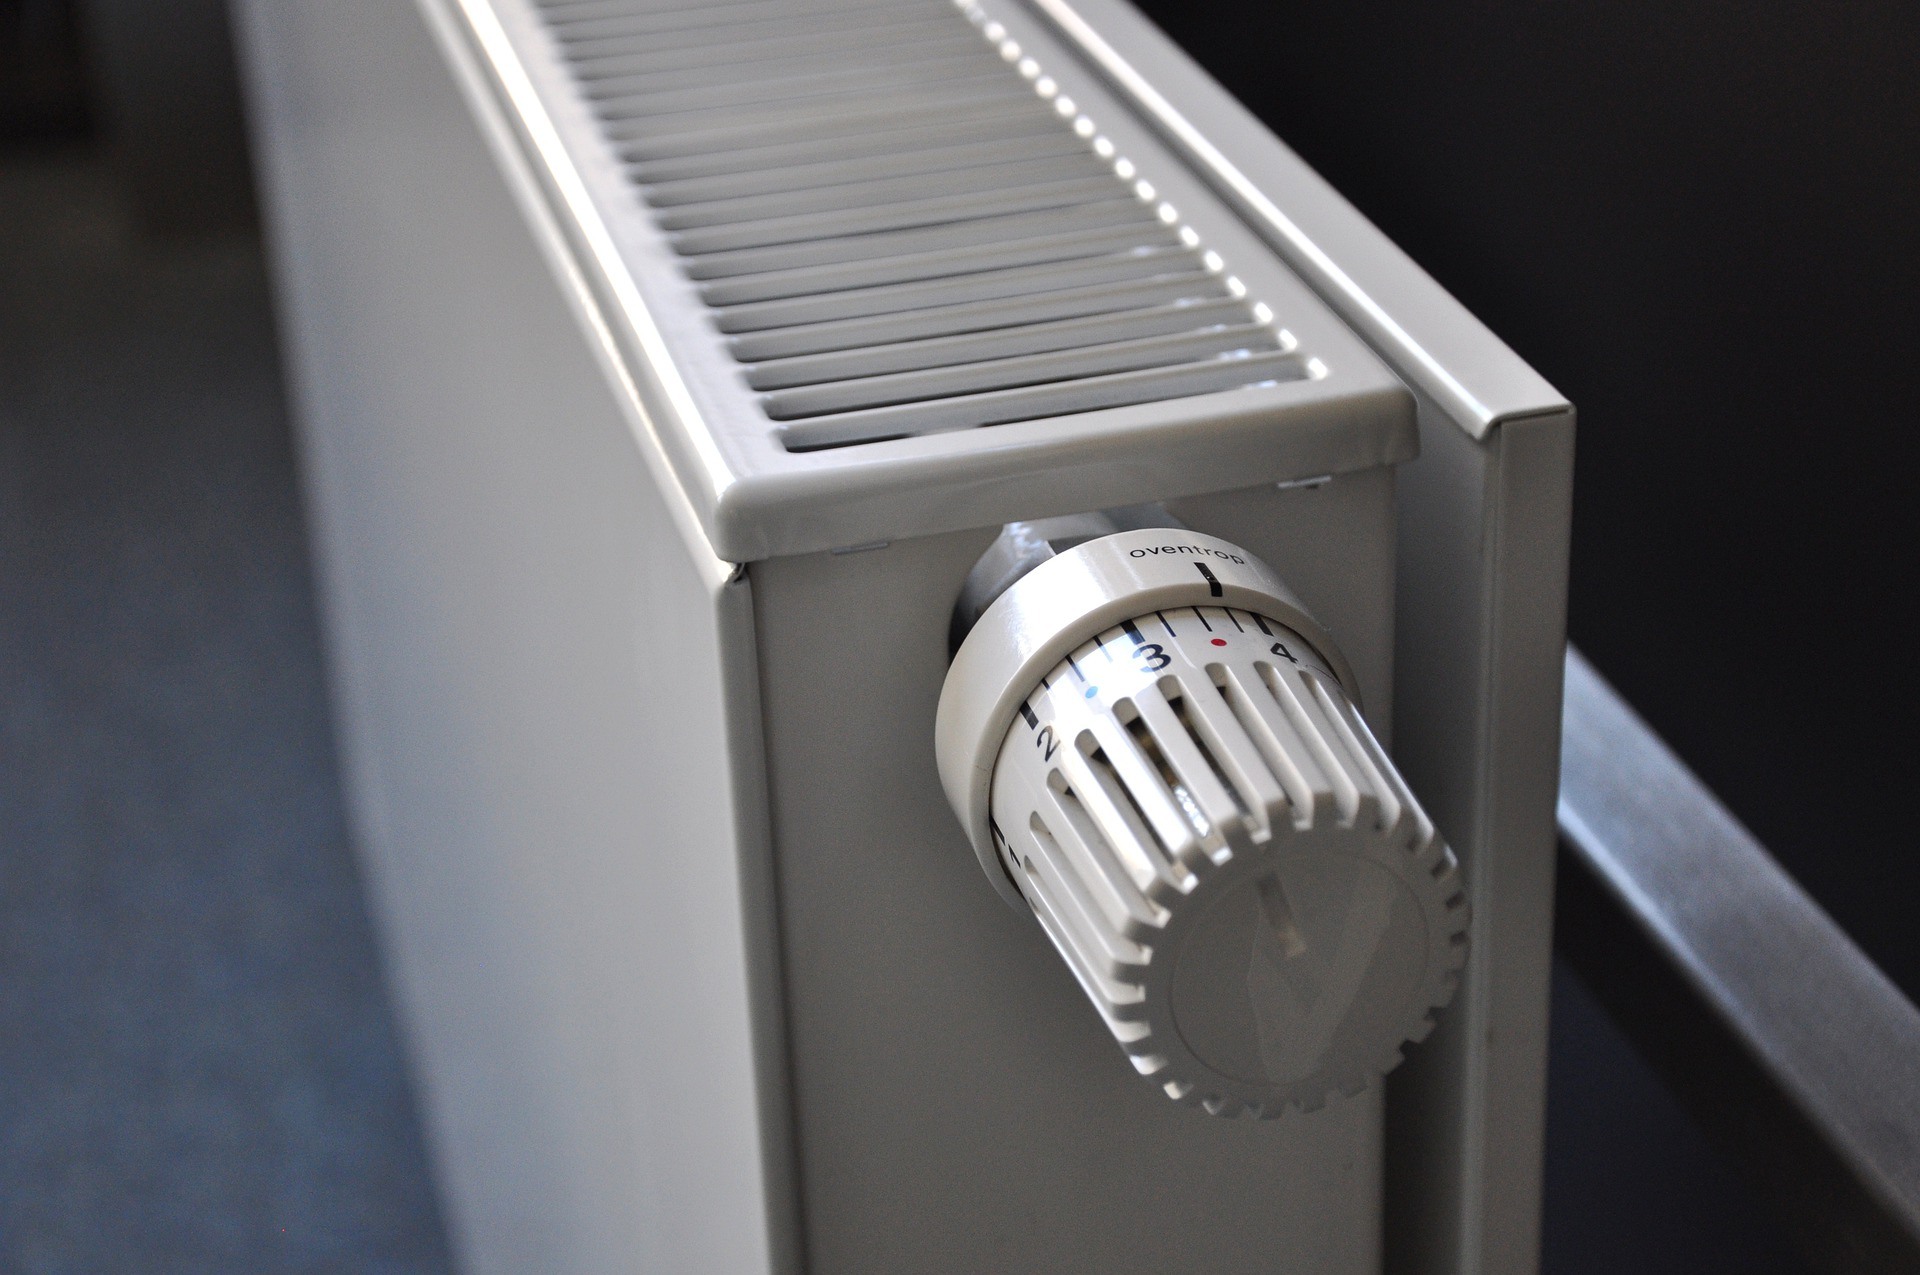 Bleed your radiators - Prevent Boiler Breakdowns